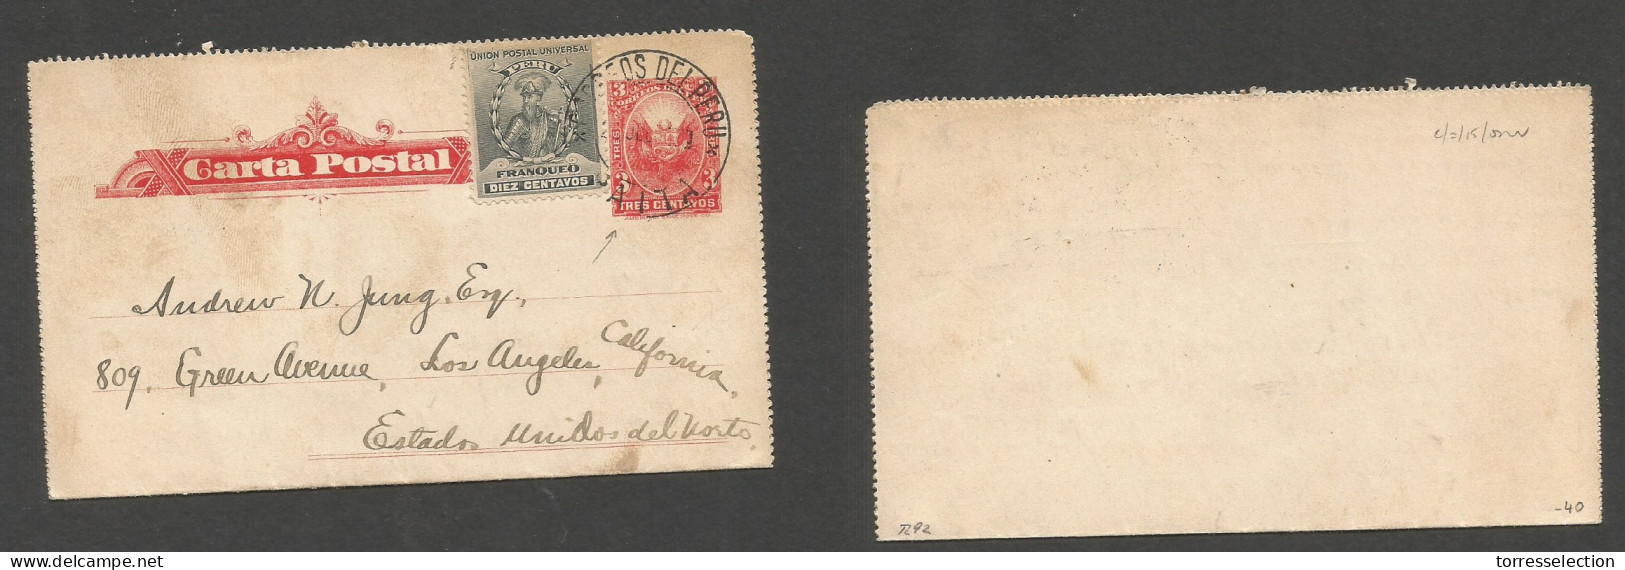 PERU. 1907 (17 July) Payta - USA, LA. 3c Red Stat Lettersheet + Adtl, Tied Cds. Fine. - Peru